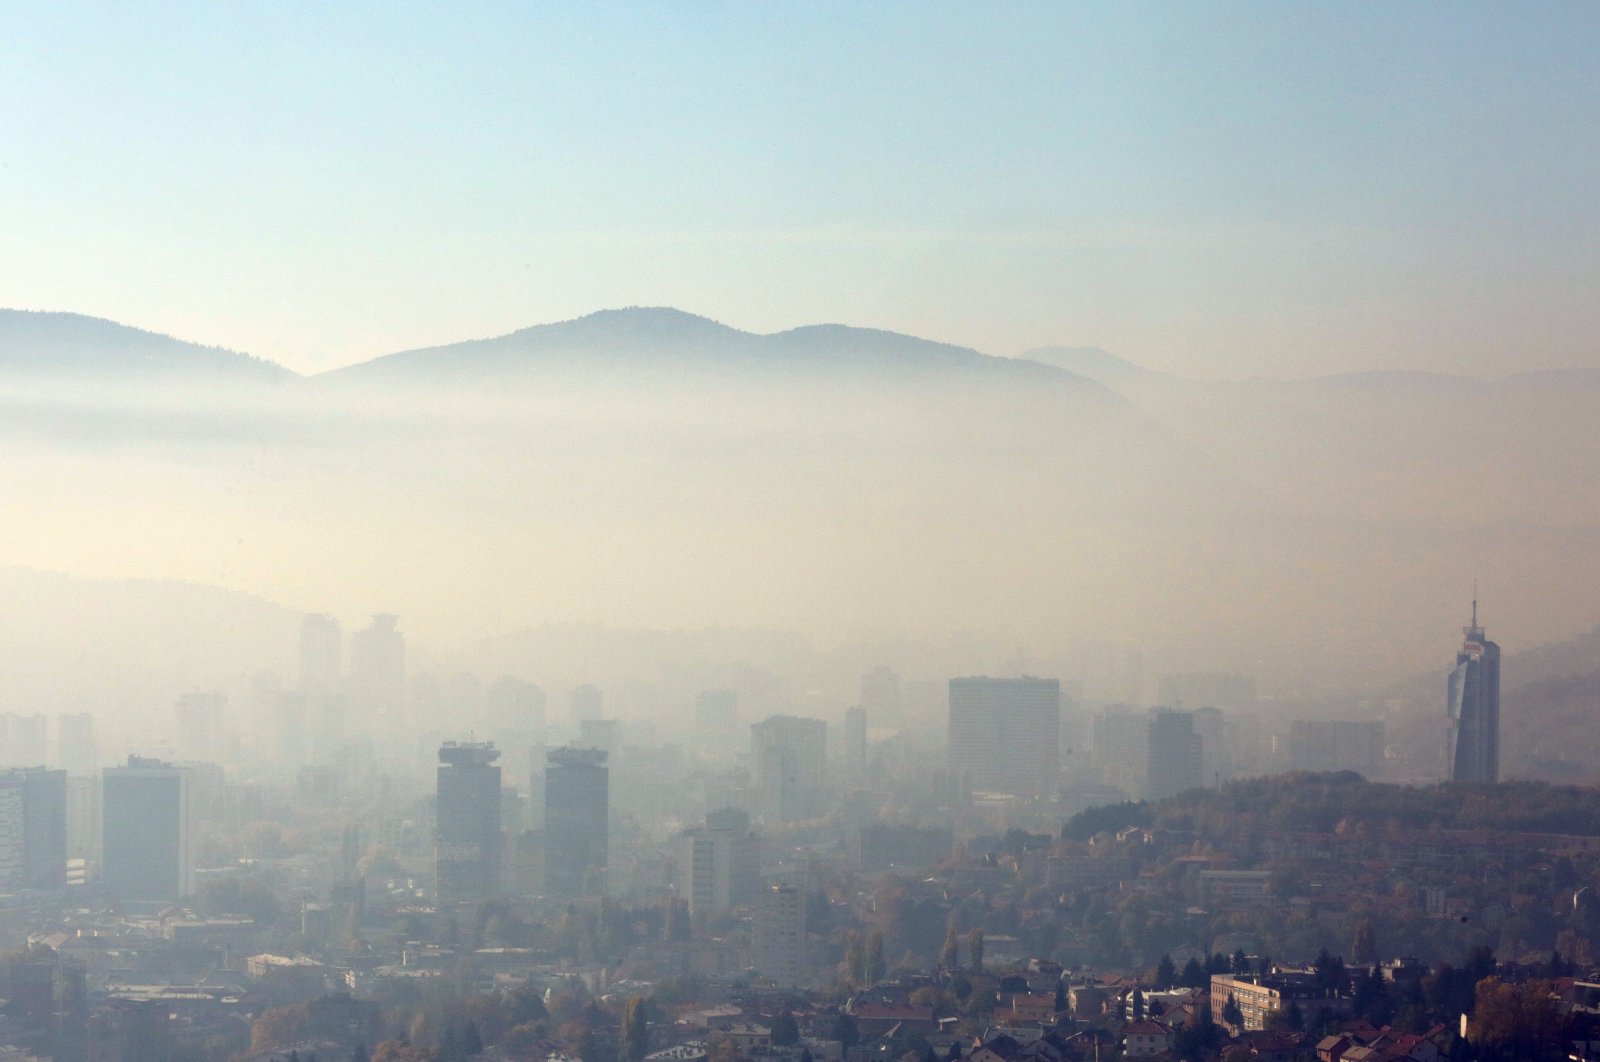 300.000 orang per tahun meninggal karena polusi udara di Eropa: Laporan